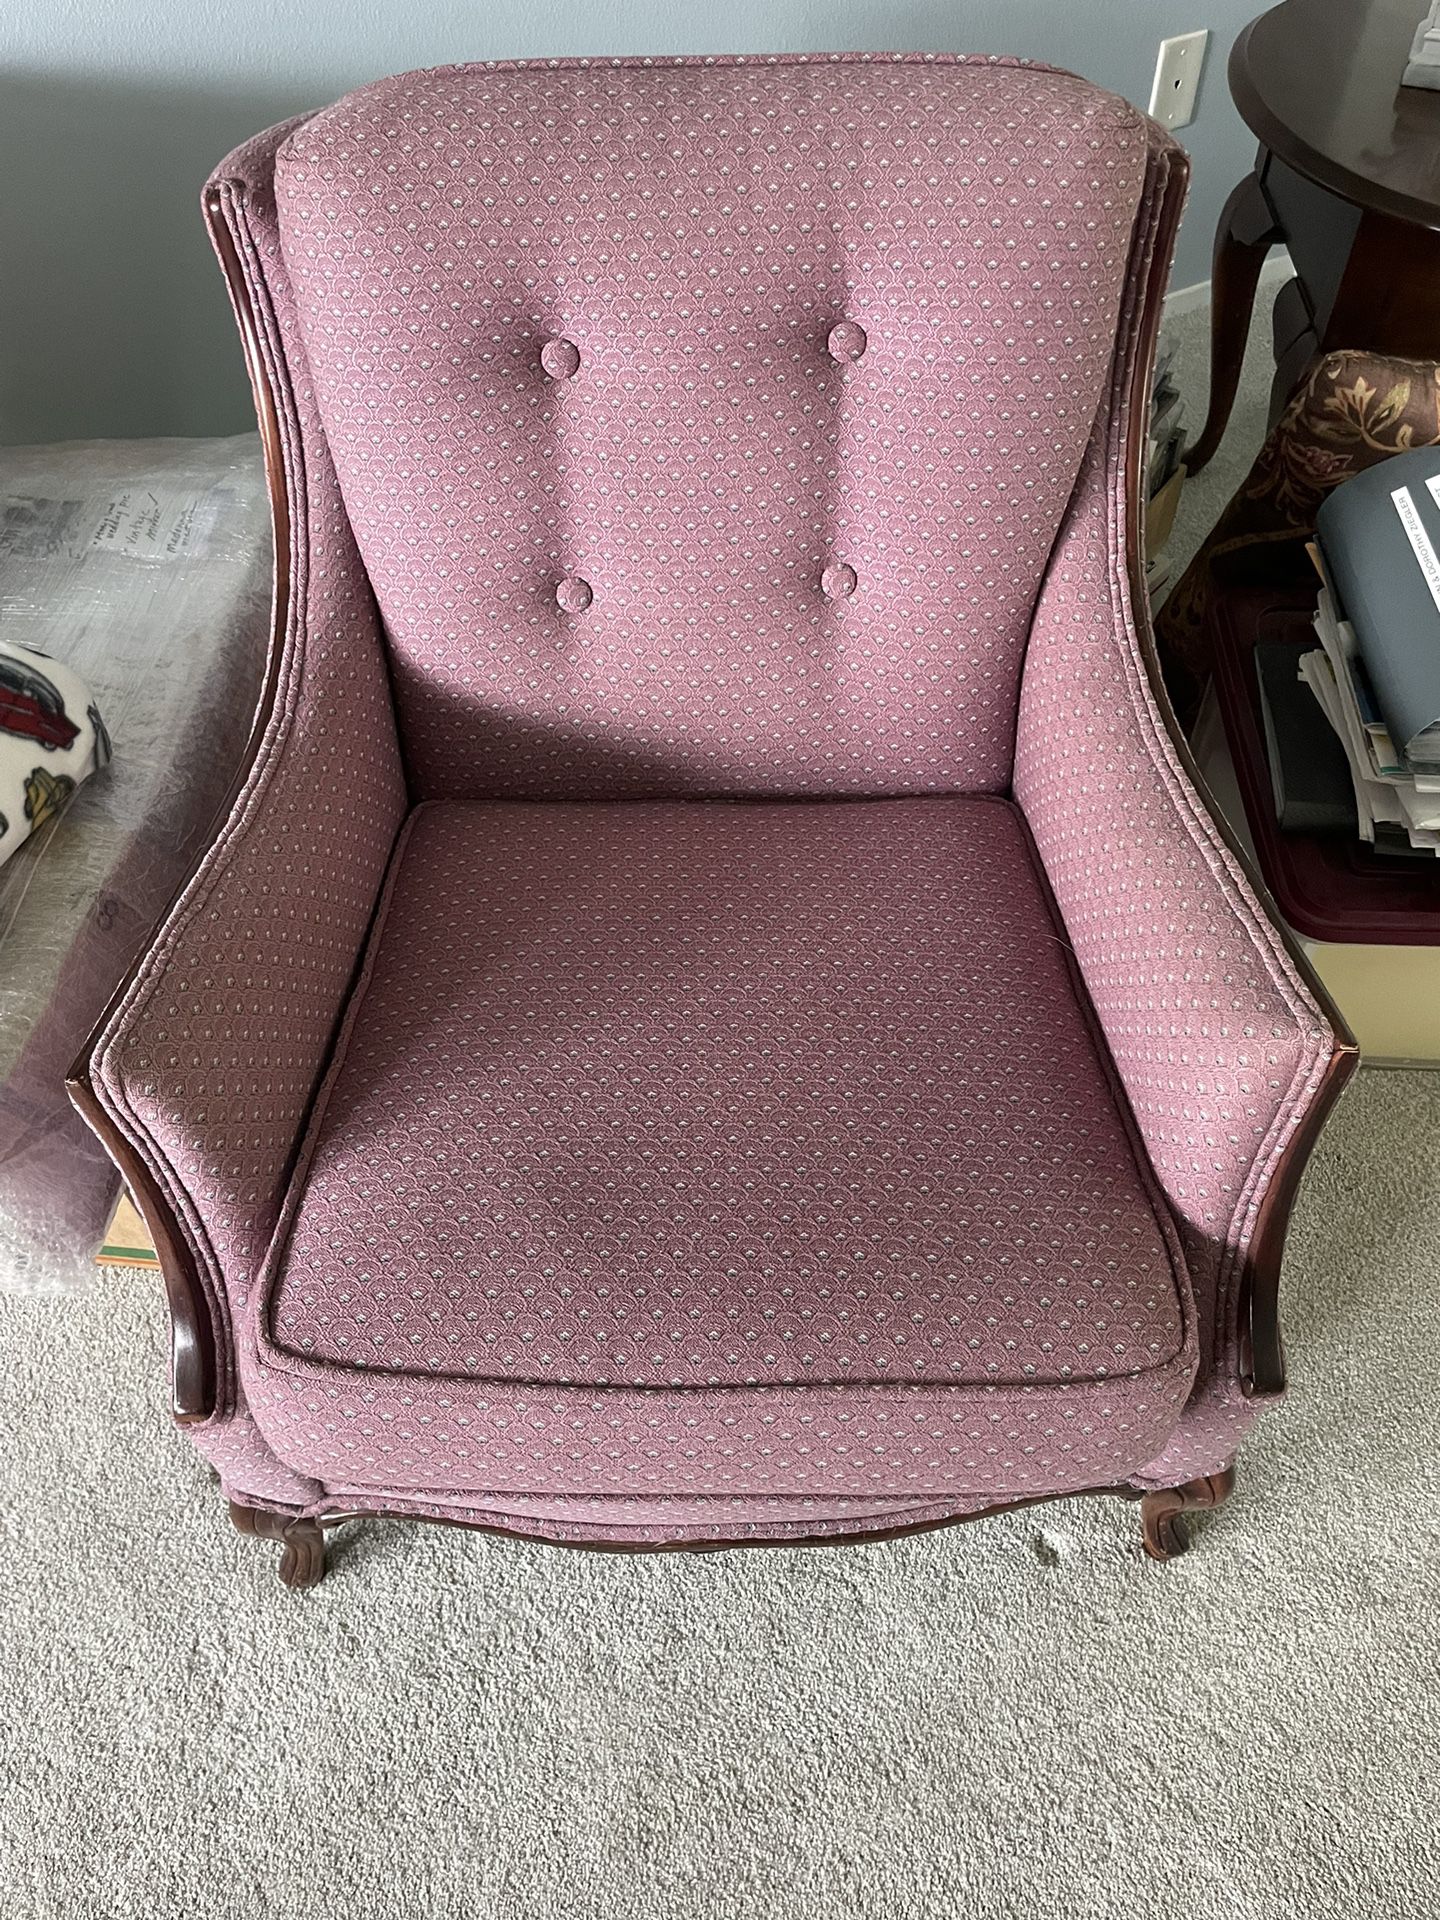 Vintage Victorian Chair